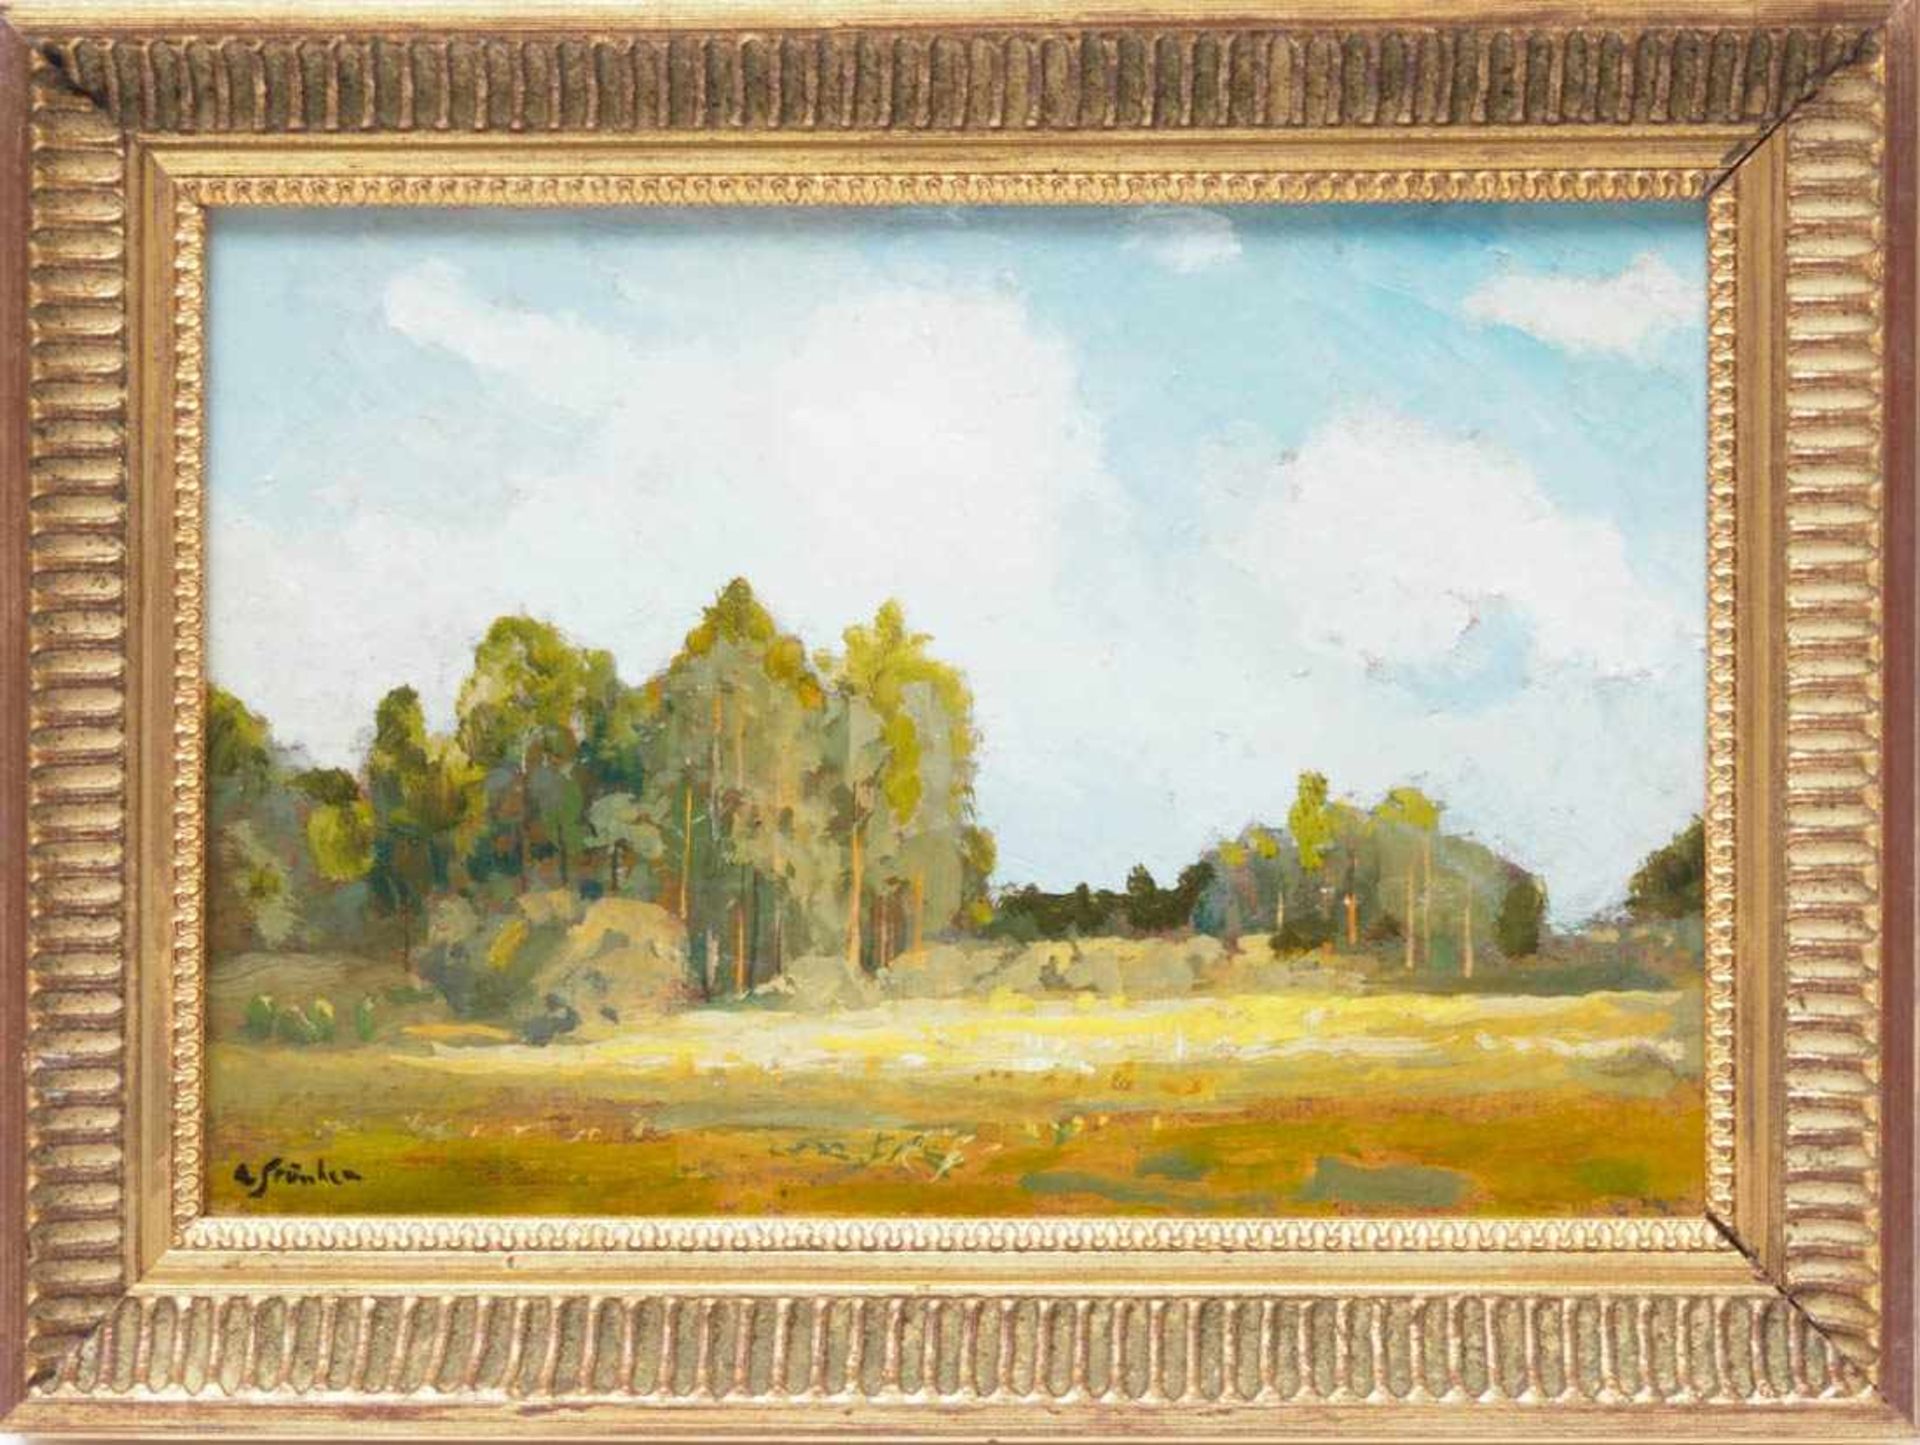 Strübe, Adolf, 1881 - 1973Markgräfler Landschaft mit Laubbäumen unter sommerblauem Himmel. Öl/Kt.,